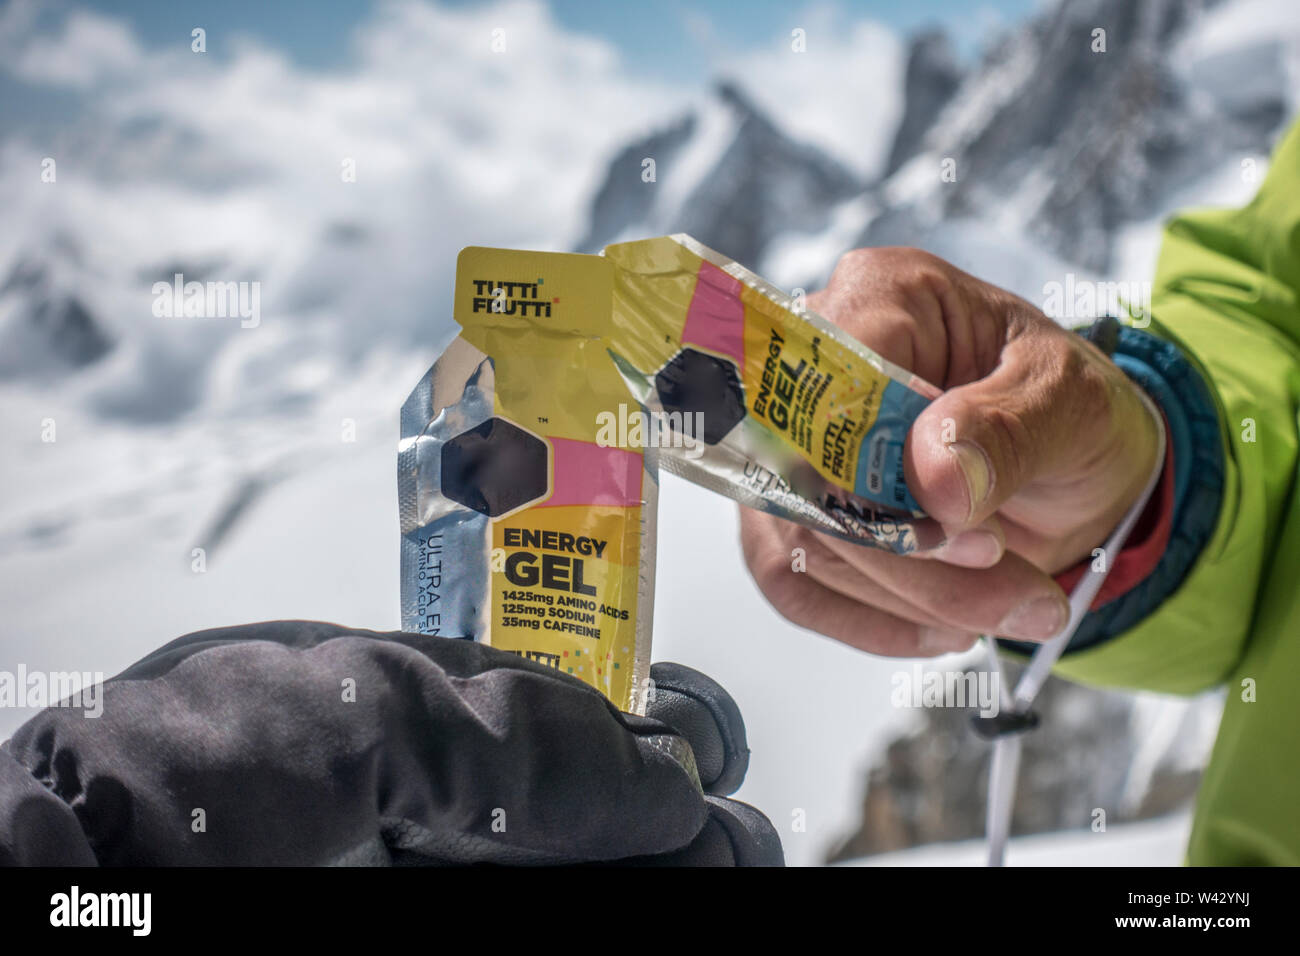 Les grimpeurs cheers avec sports nutrition au cours d'un itinéraire alpin Banque D'Images